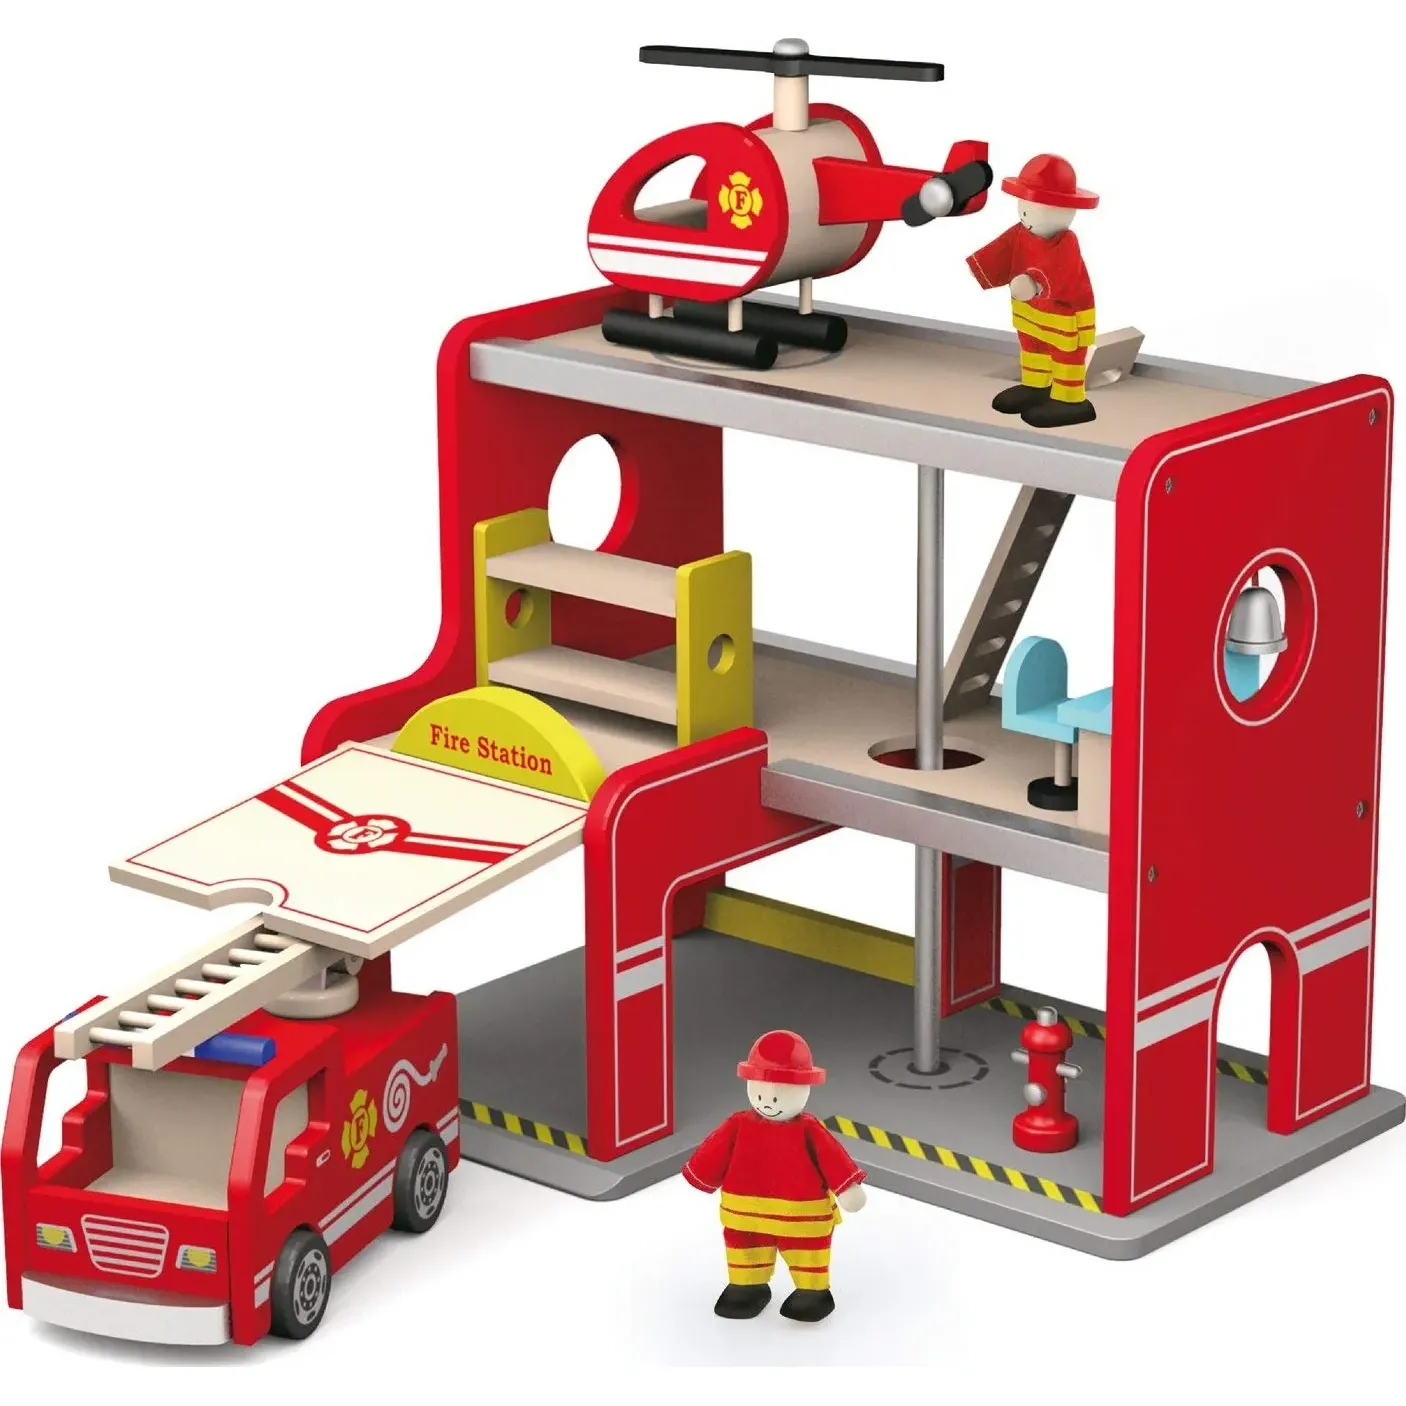 Деревянный игровой набор Viga Toys Пожарная станция (50828) - фото 2